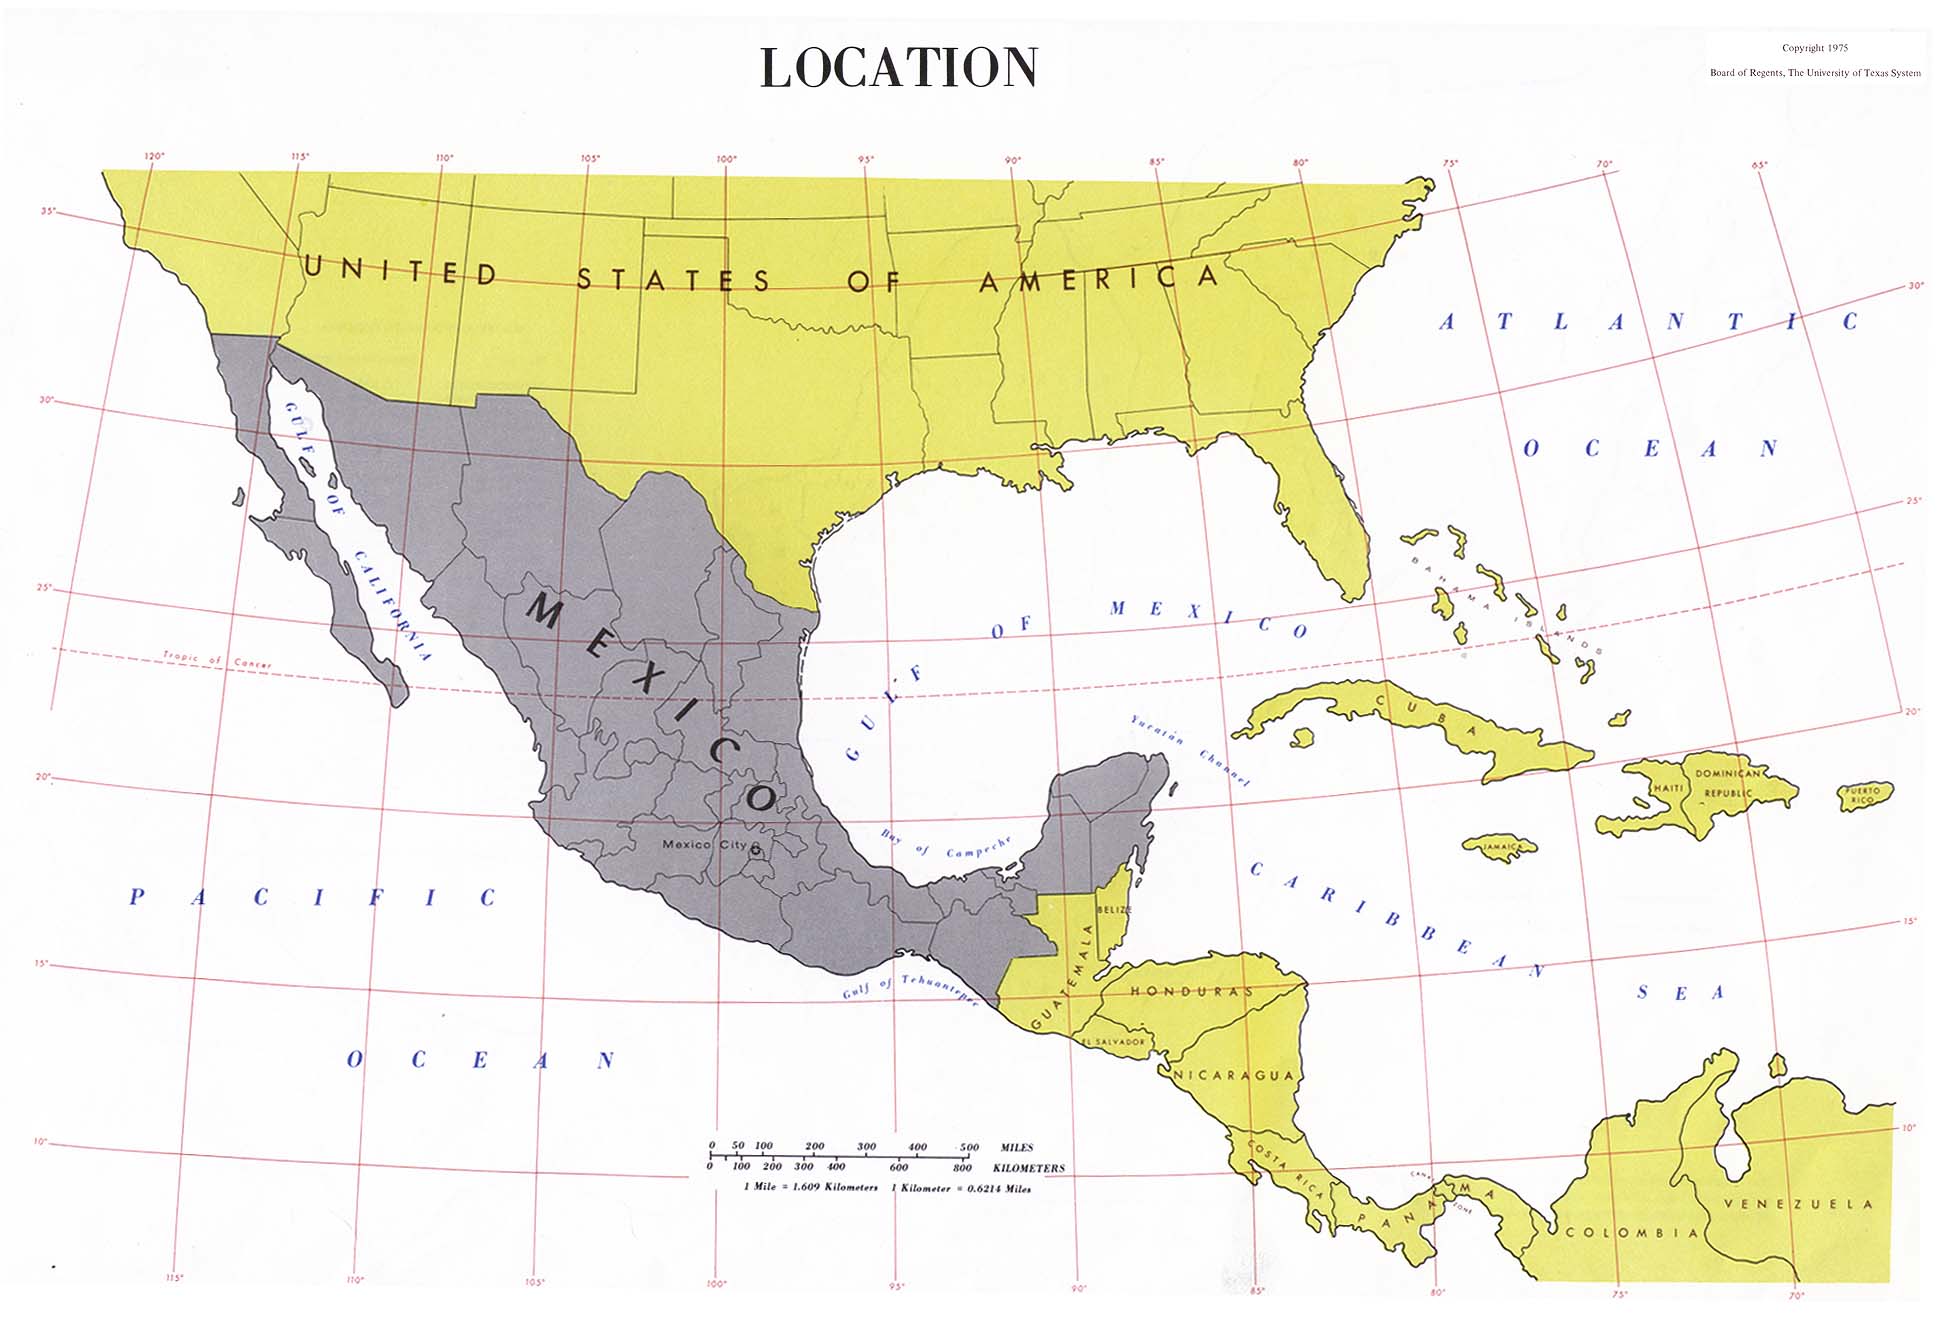 Mapa de Ubicación de México